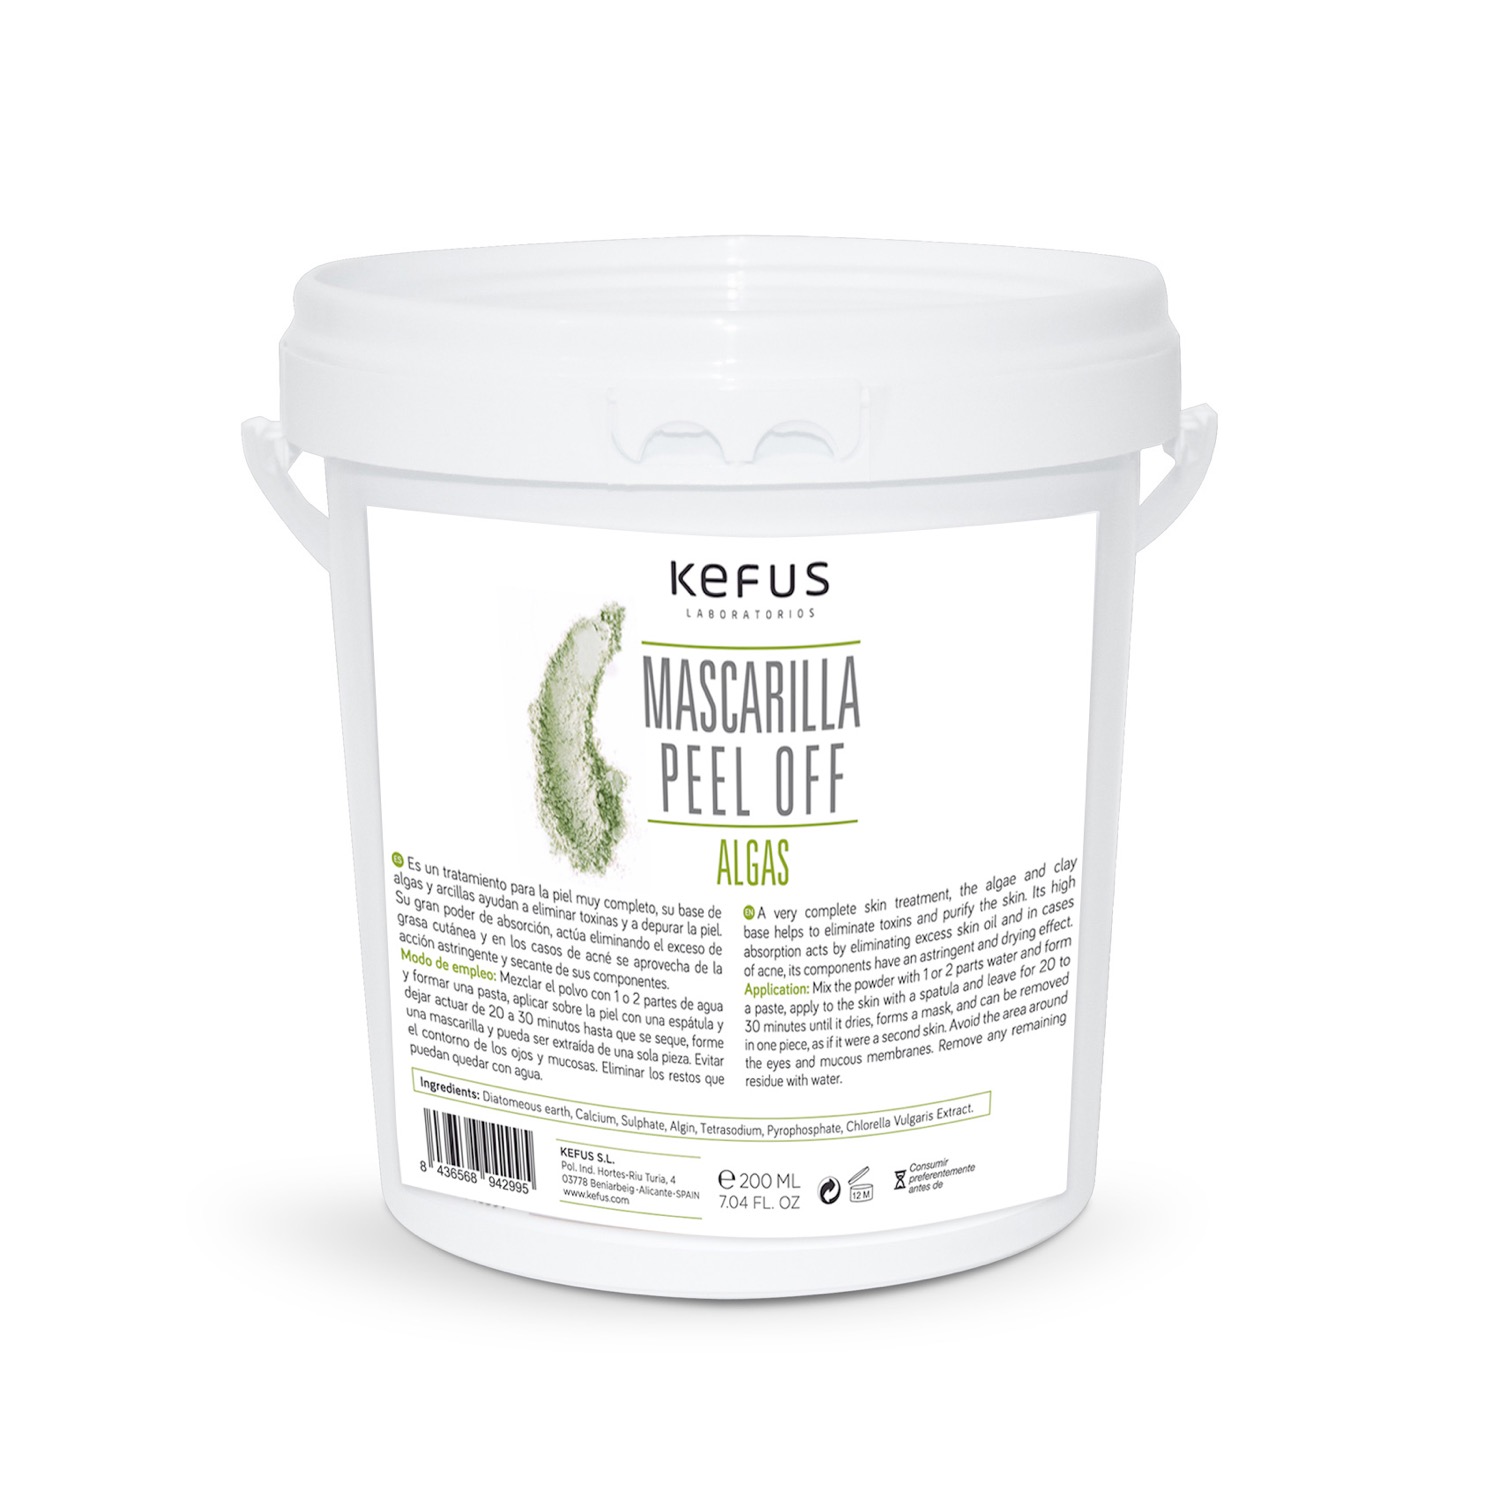 Mascarilla Peel Off Alginato Algas Kefus. 200 g